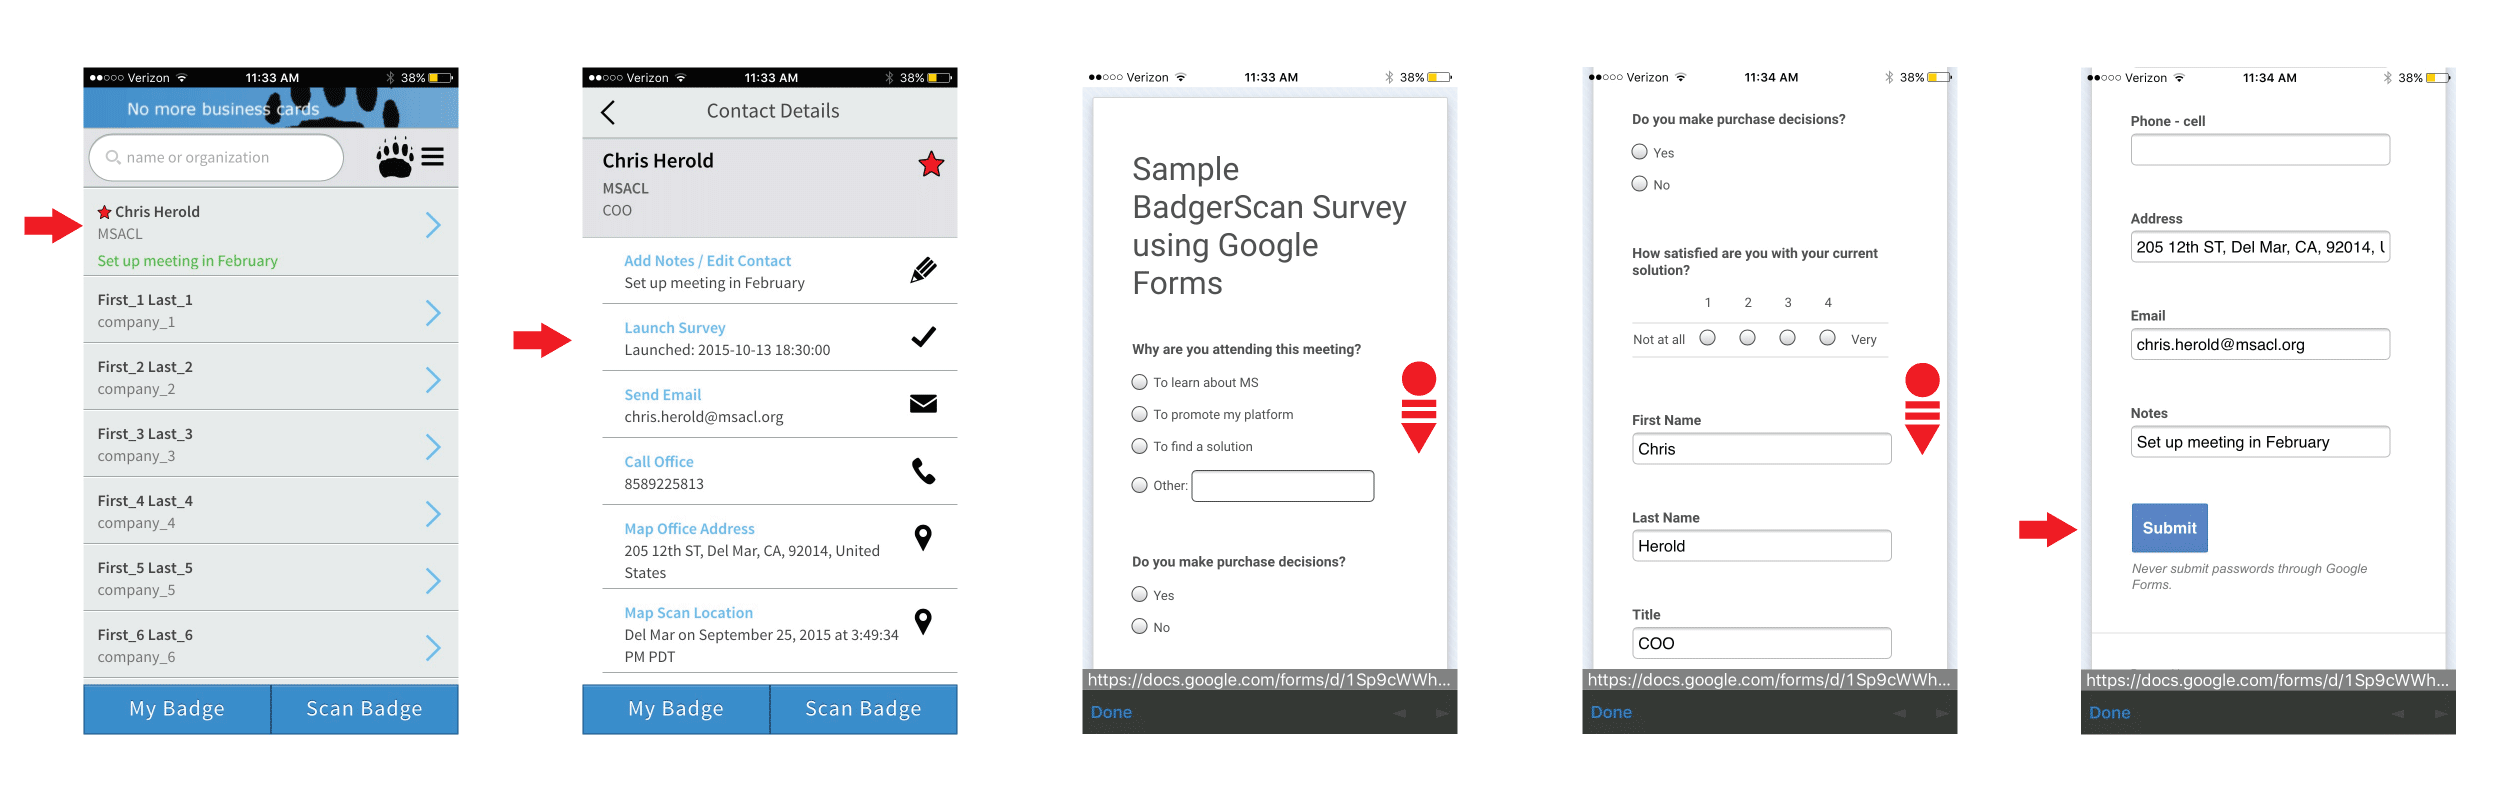 Launch_Survey